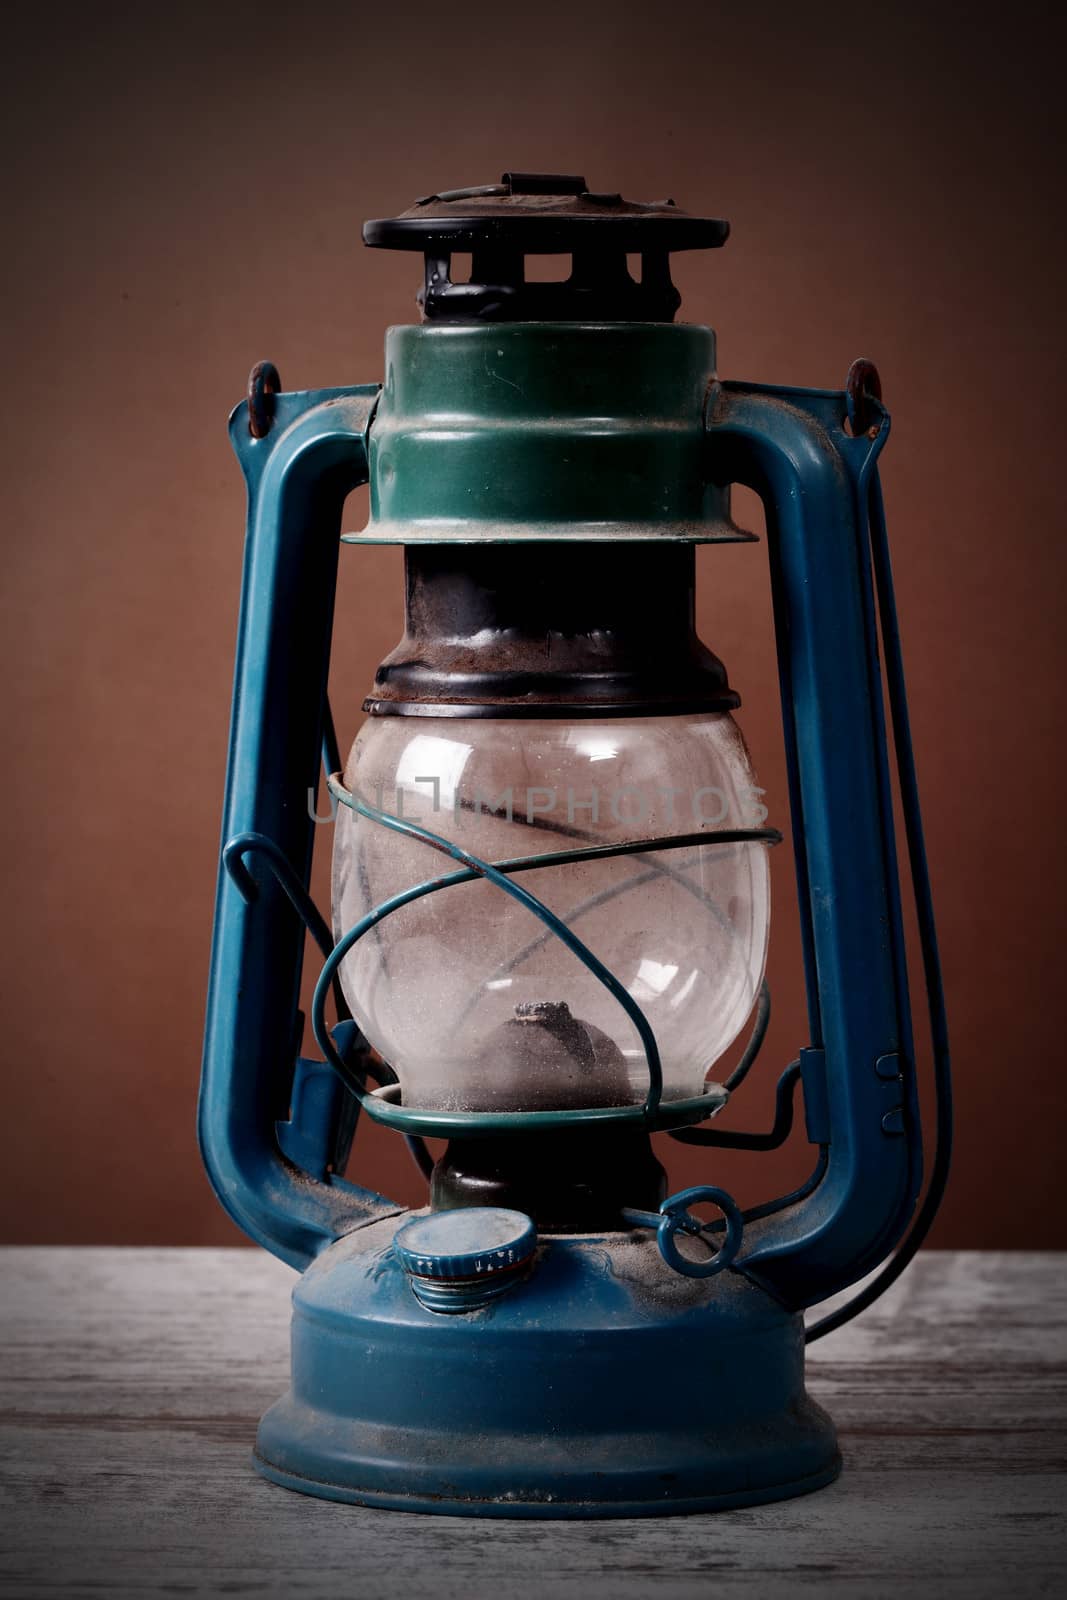 old rusty kerosene lamp 